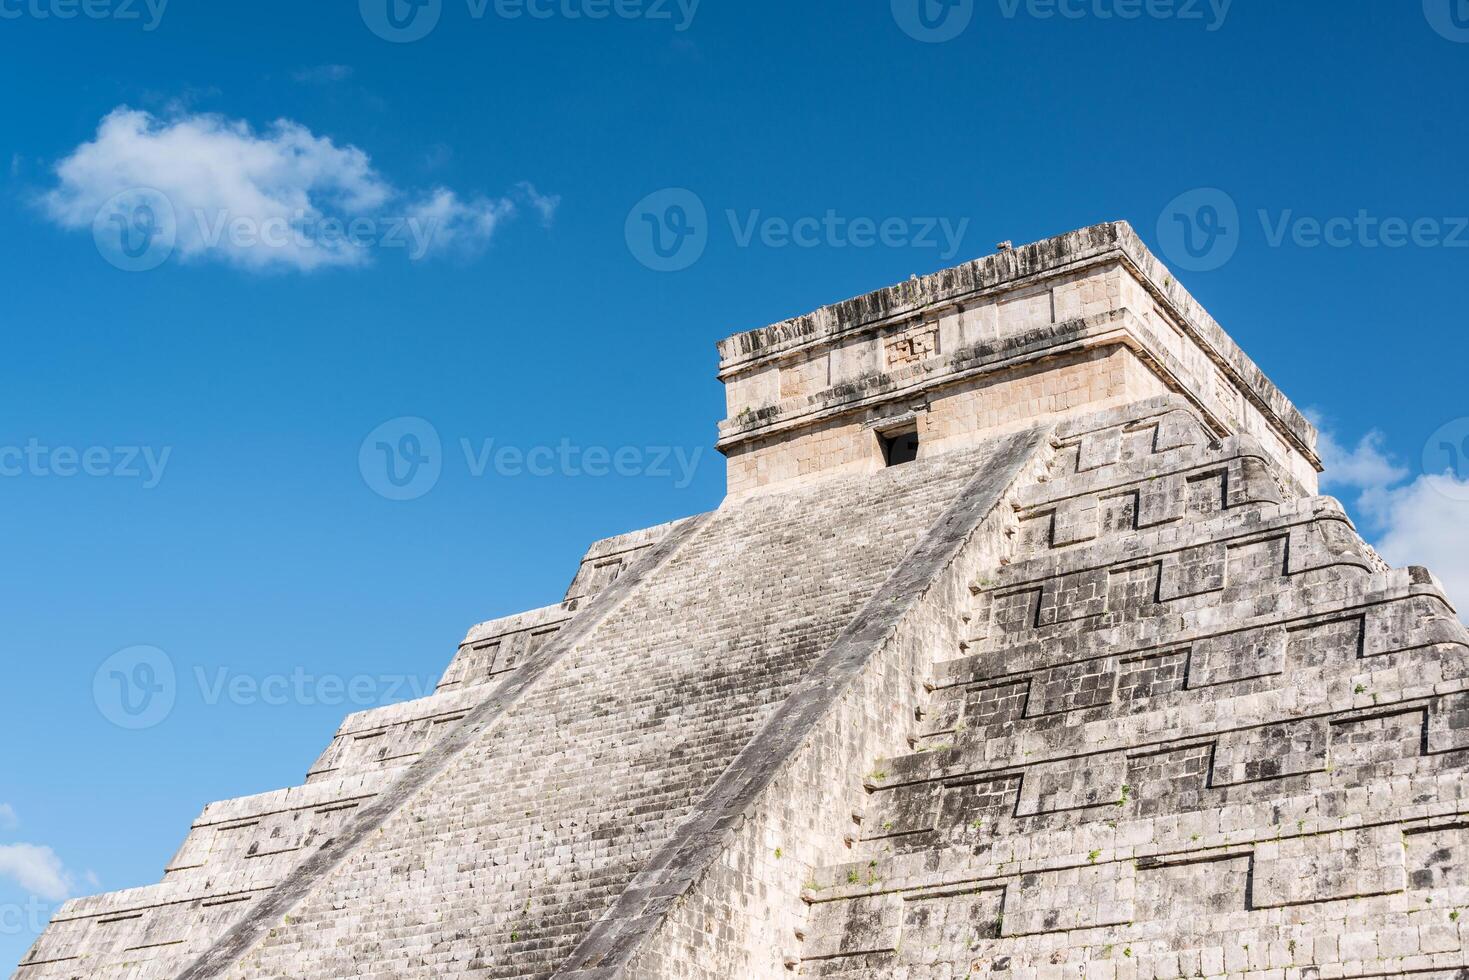 el castillo en Chichen itzá, mexico foto